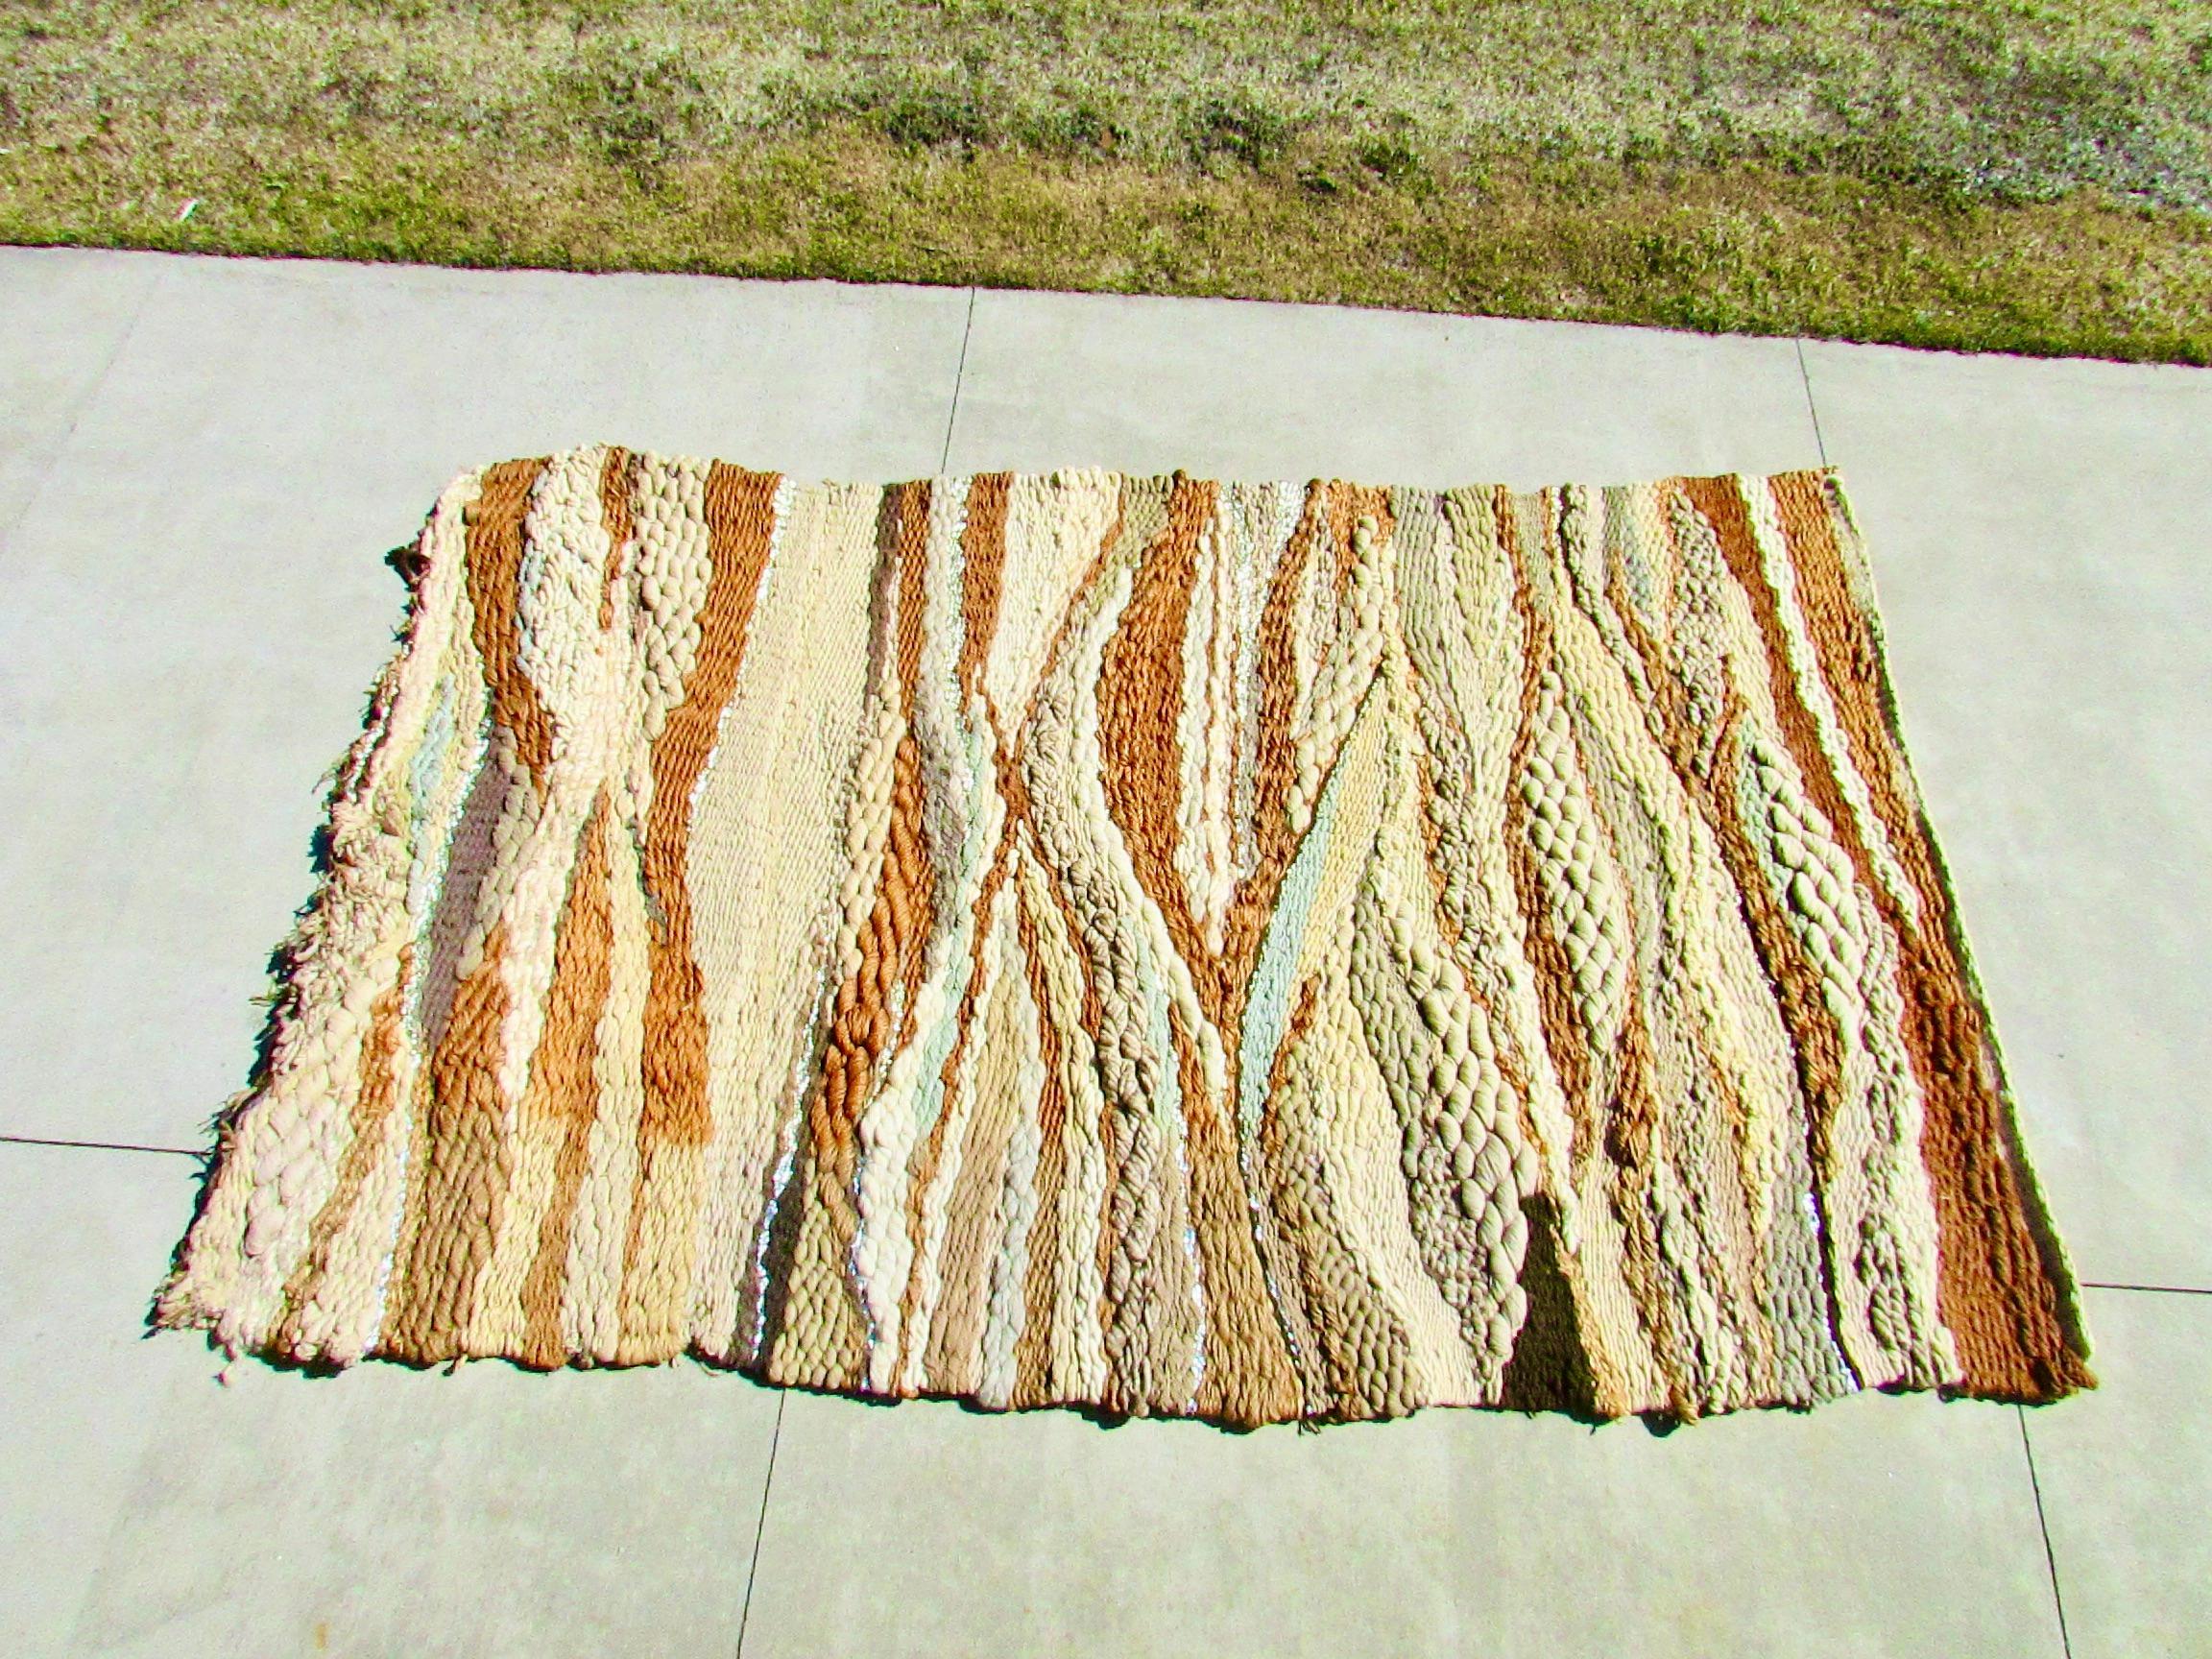 
Sehr groß  Romeo Reyna (1935-2016) Faserkunst Wandteppich .  Unterschiedliche Texturen aus natürlicher Wolle, Baumwolle, Jute in verschiedenen  Braun-, Beige-, Creme- und Wüstenfarbtöne  Lavendel, die zu dieser überdimensionalen Wandverkleidung